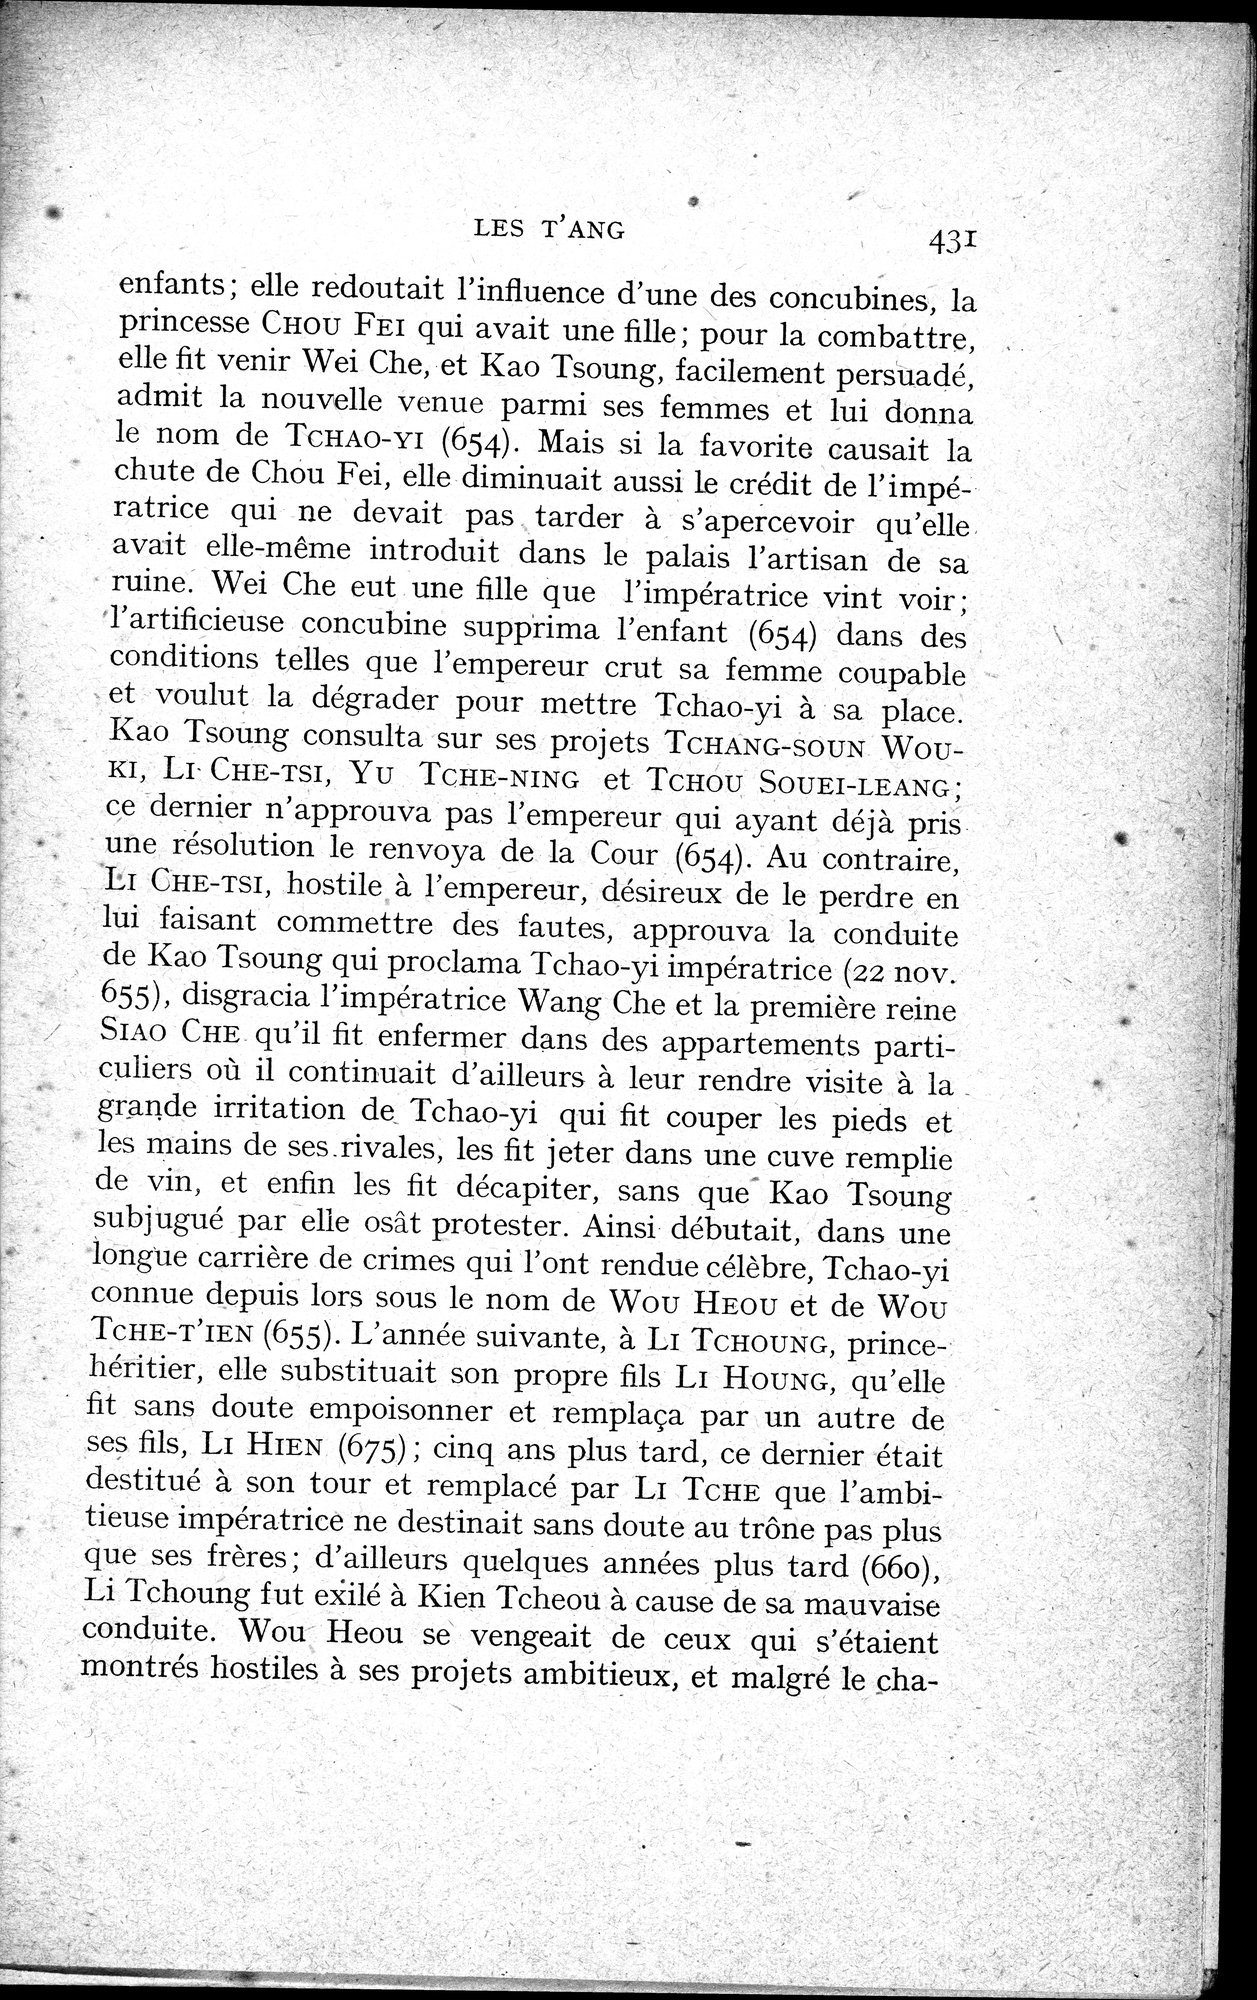 Histoire Générale de la Chine : vol.1 / Page 433 (Grayscale High Resolution Image)